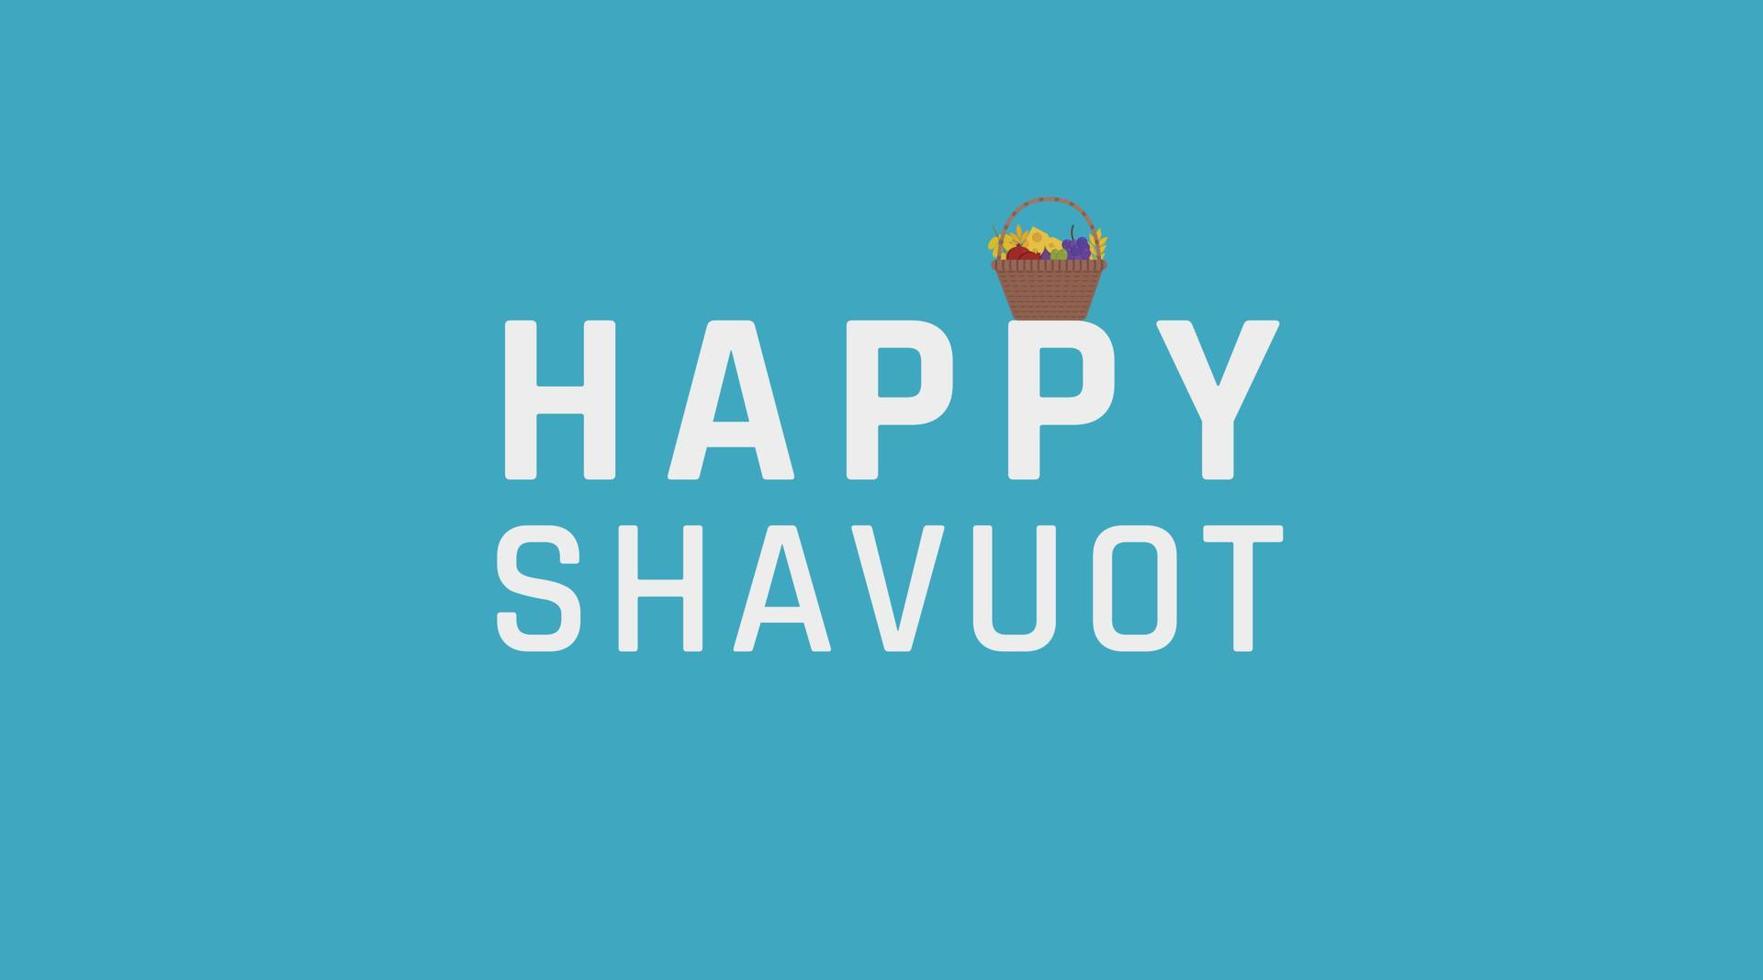 Shavuot-Urlaubsgruß mit Ernteweidenkorb-Symbol und englischem Text vektor